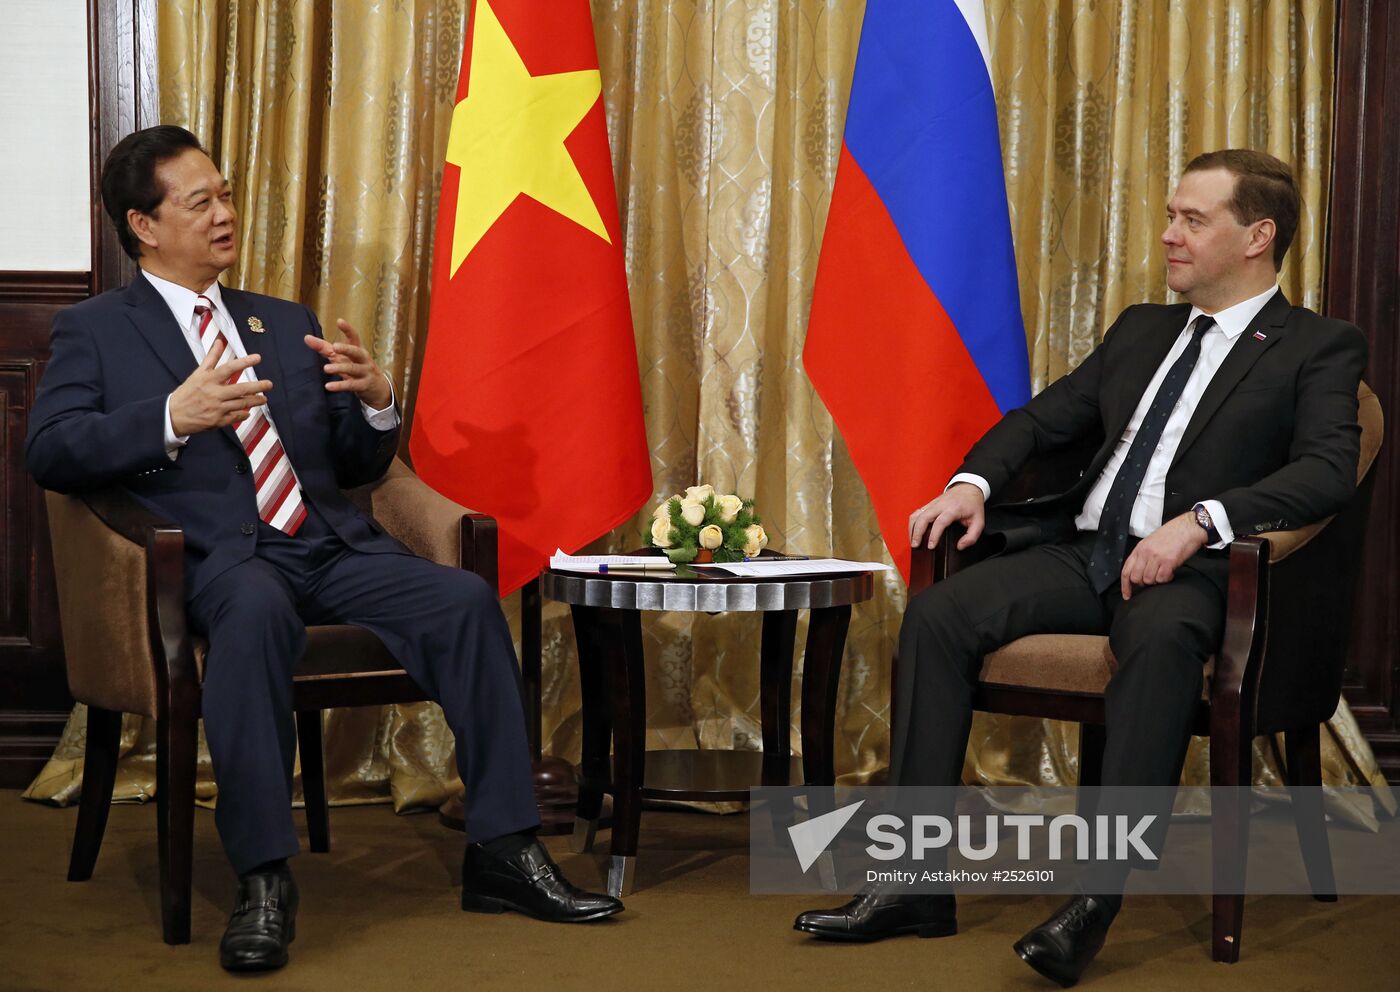 Dmitry Medvedev attends East Asia summit in Myanmar